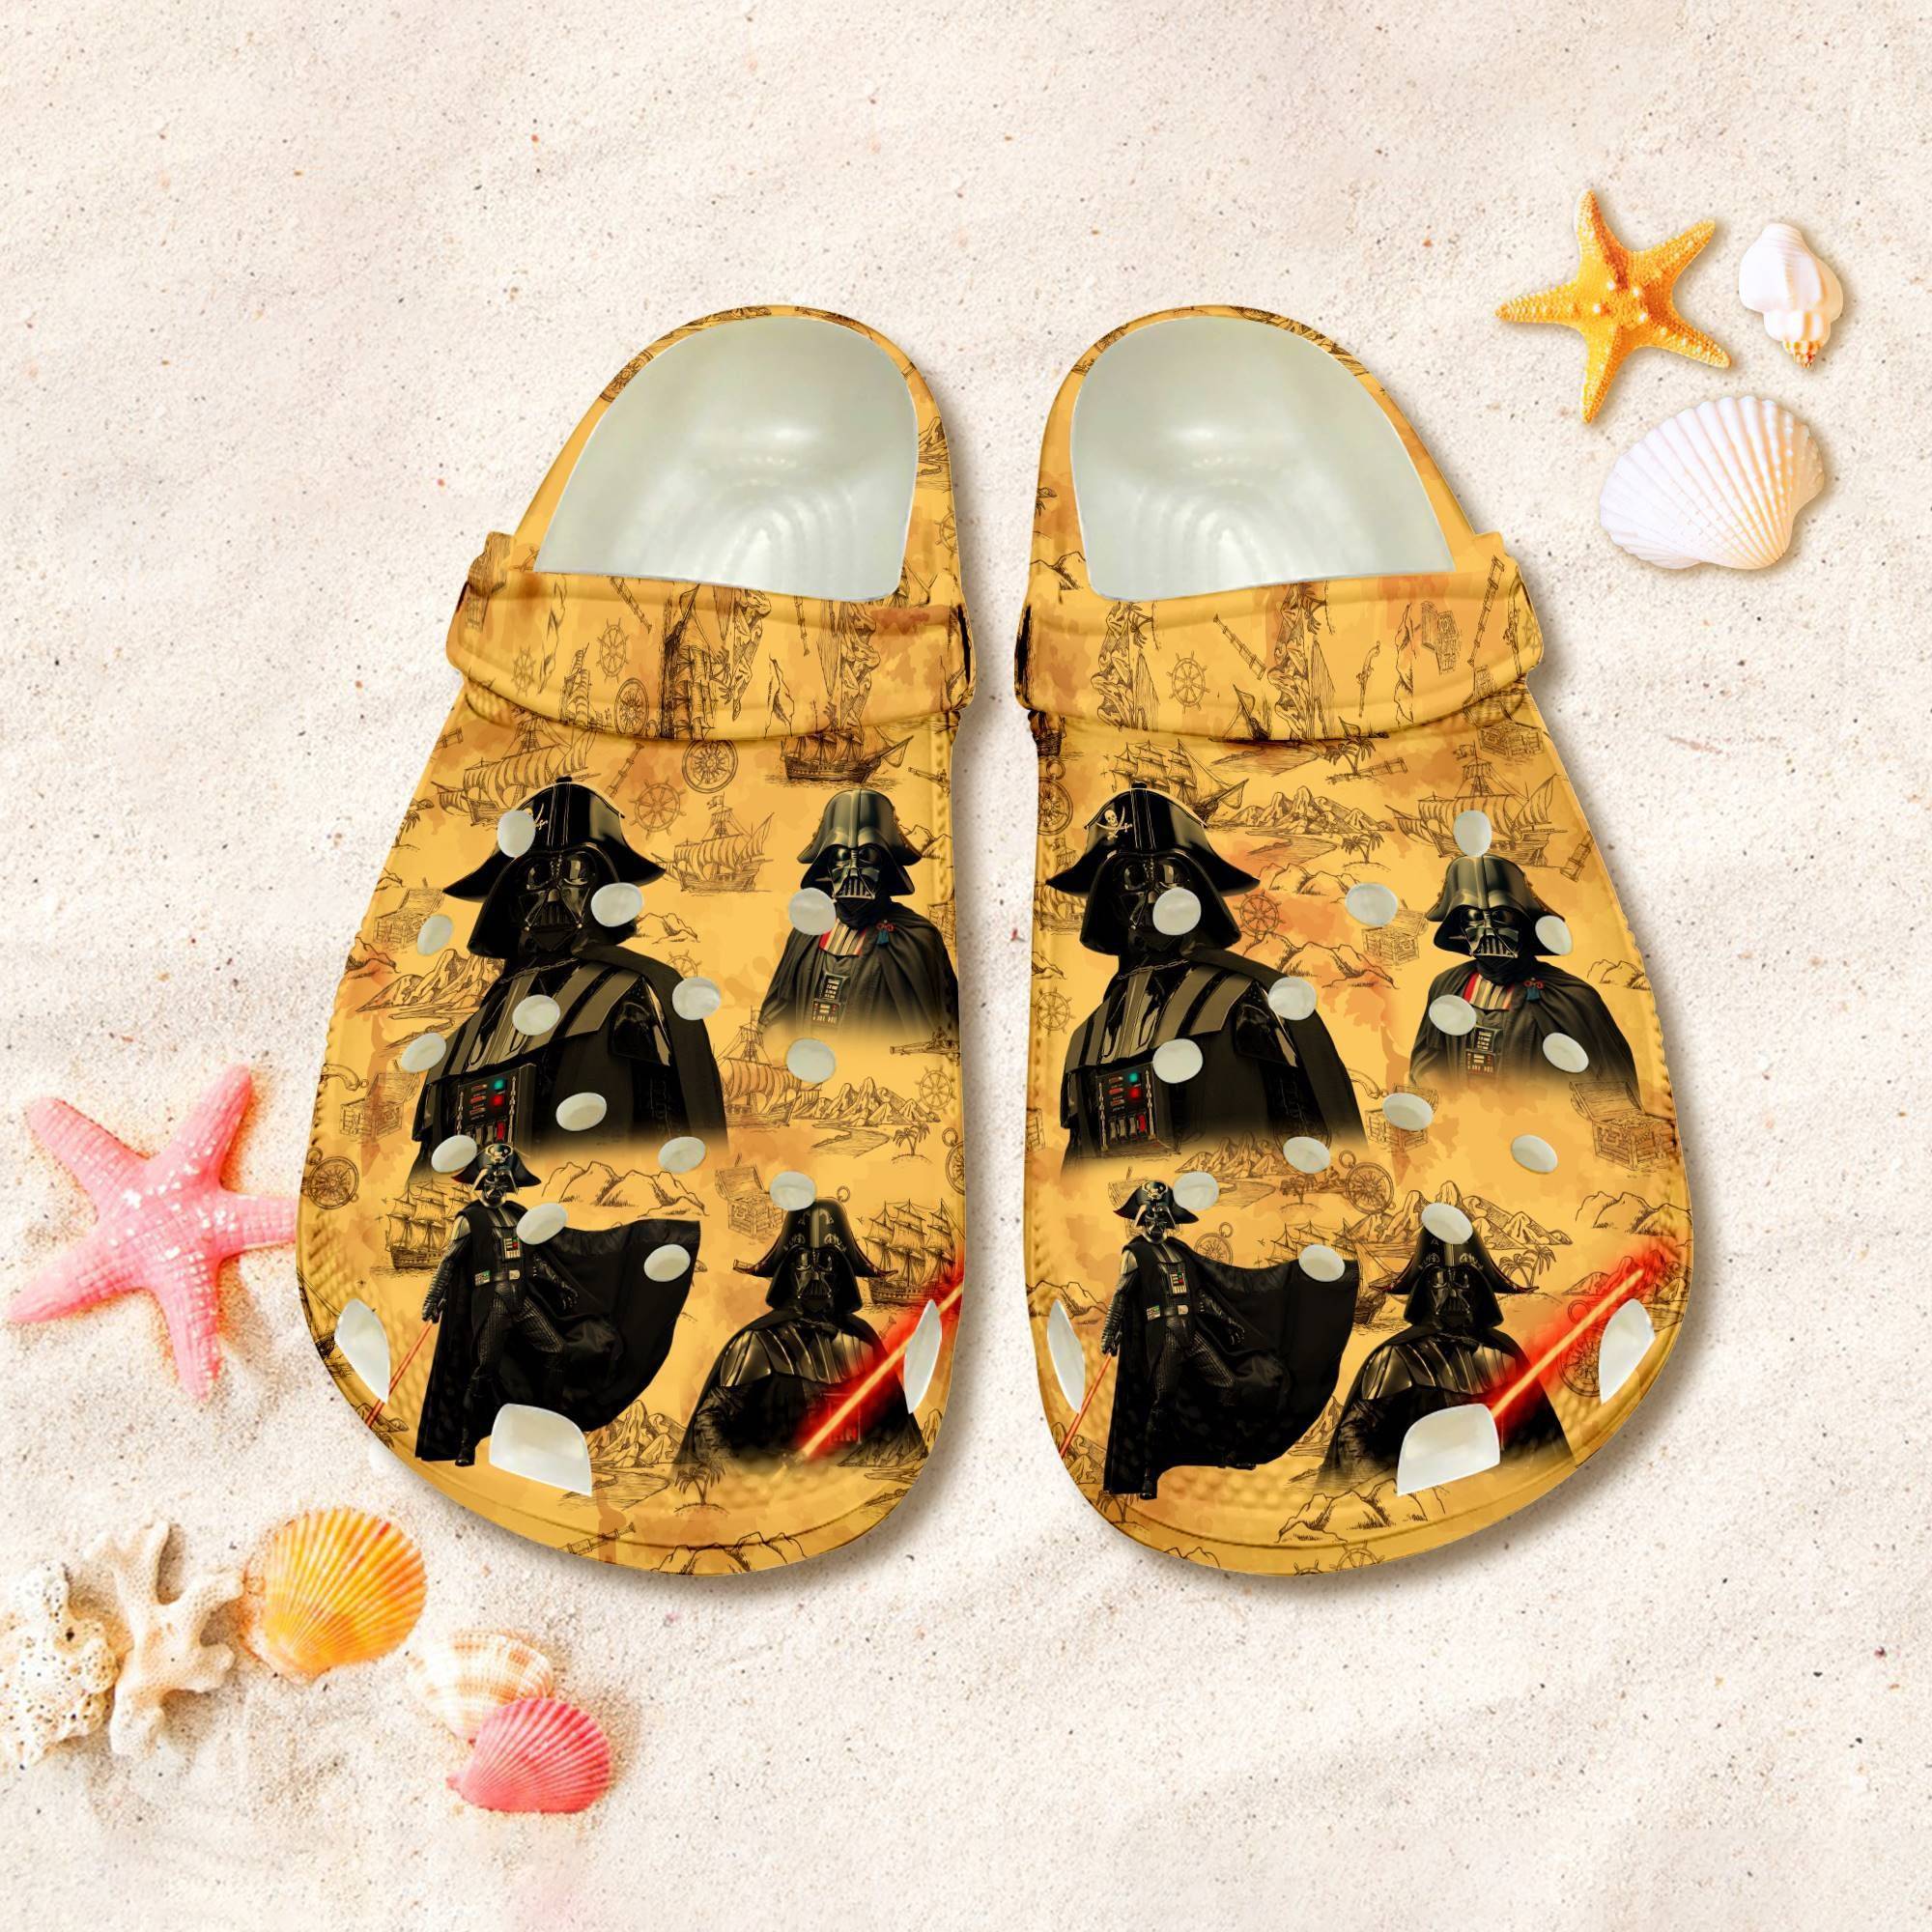 Darth Vader Pirate Caribbean Treasure Clog Galaxy Edge Aloha Sandal Shoes